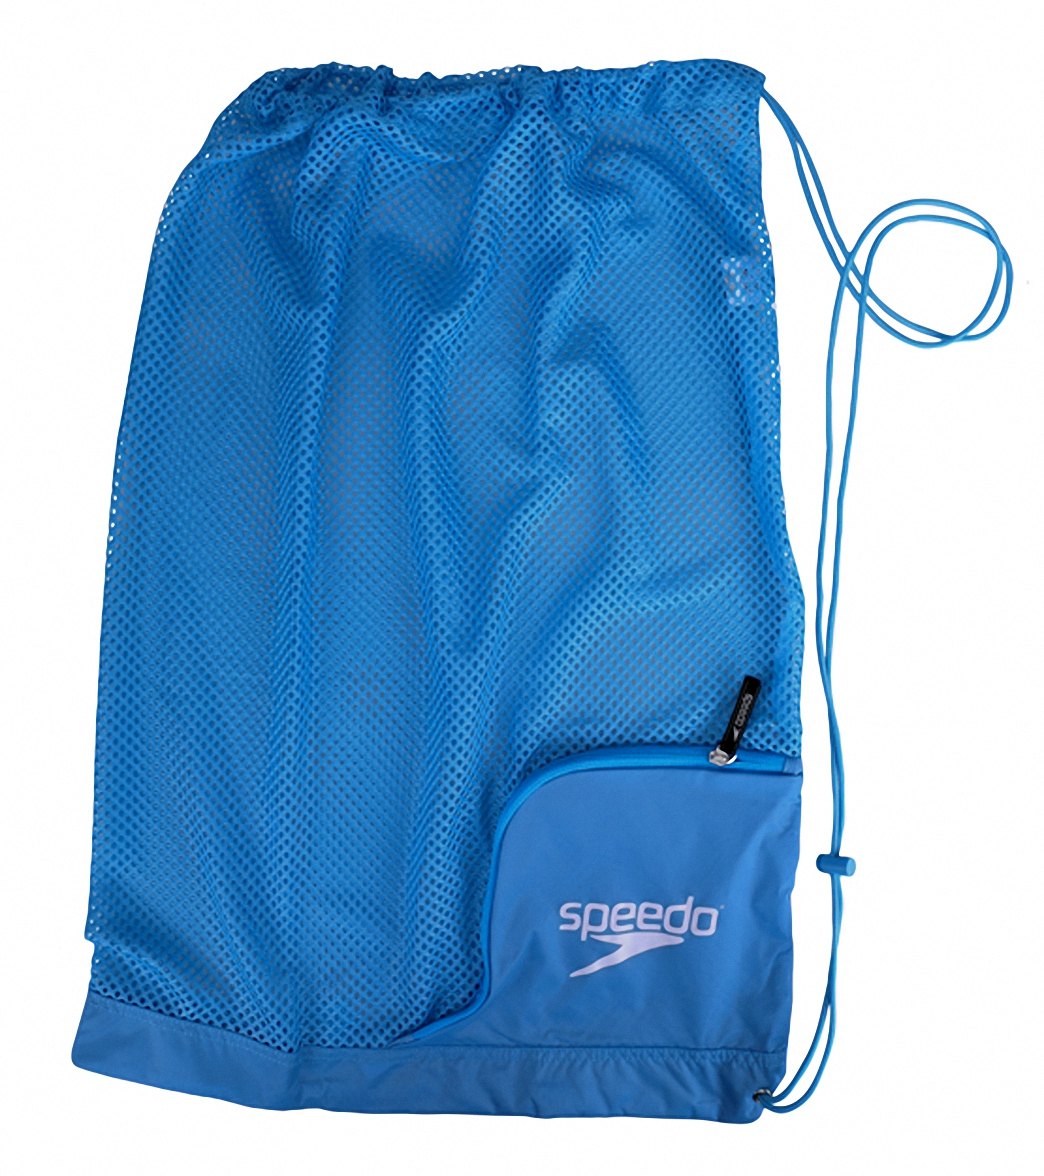 Speedo Ventilator Mesh Bag - Imperial Blue - Swimoutlet.com